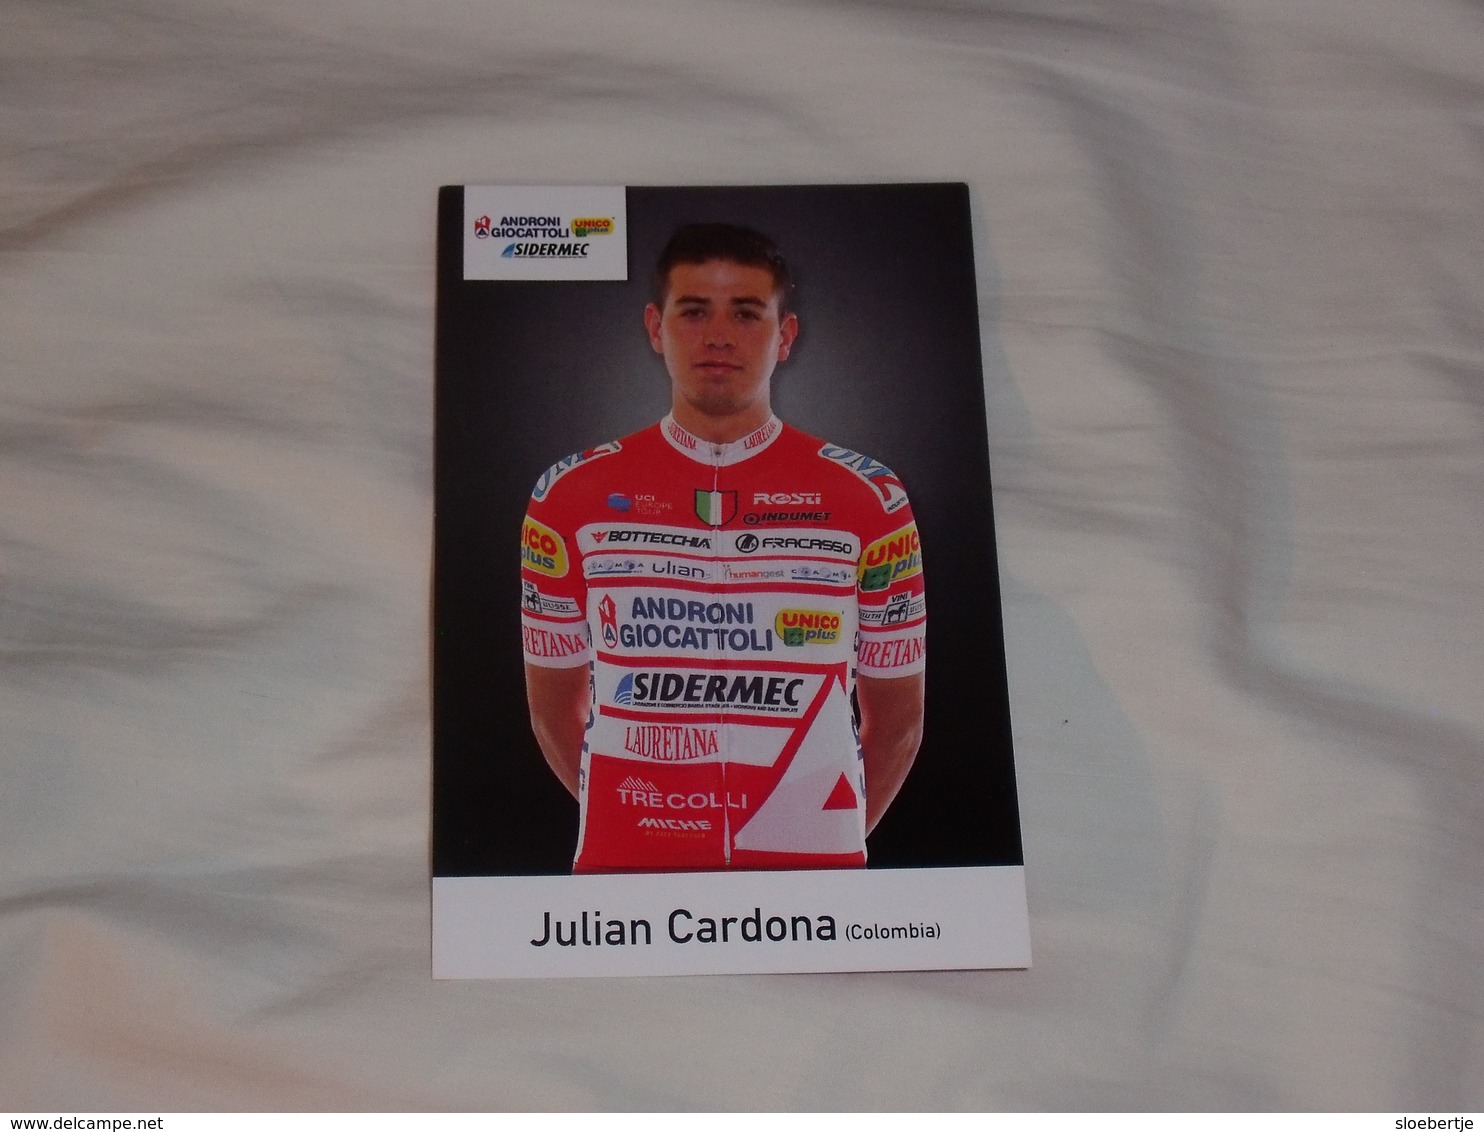 Julian Cardona Tabares - Androni Giocattoli Sidermec - 2019 - Cycling